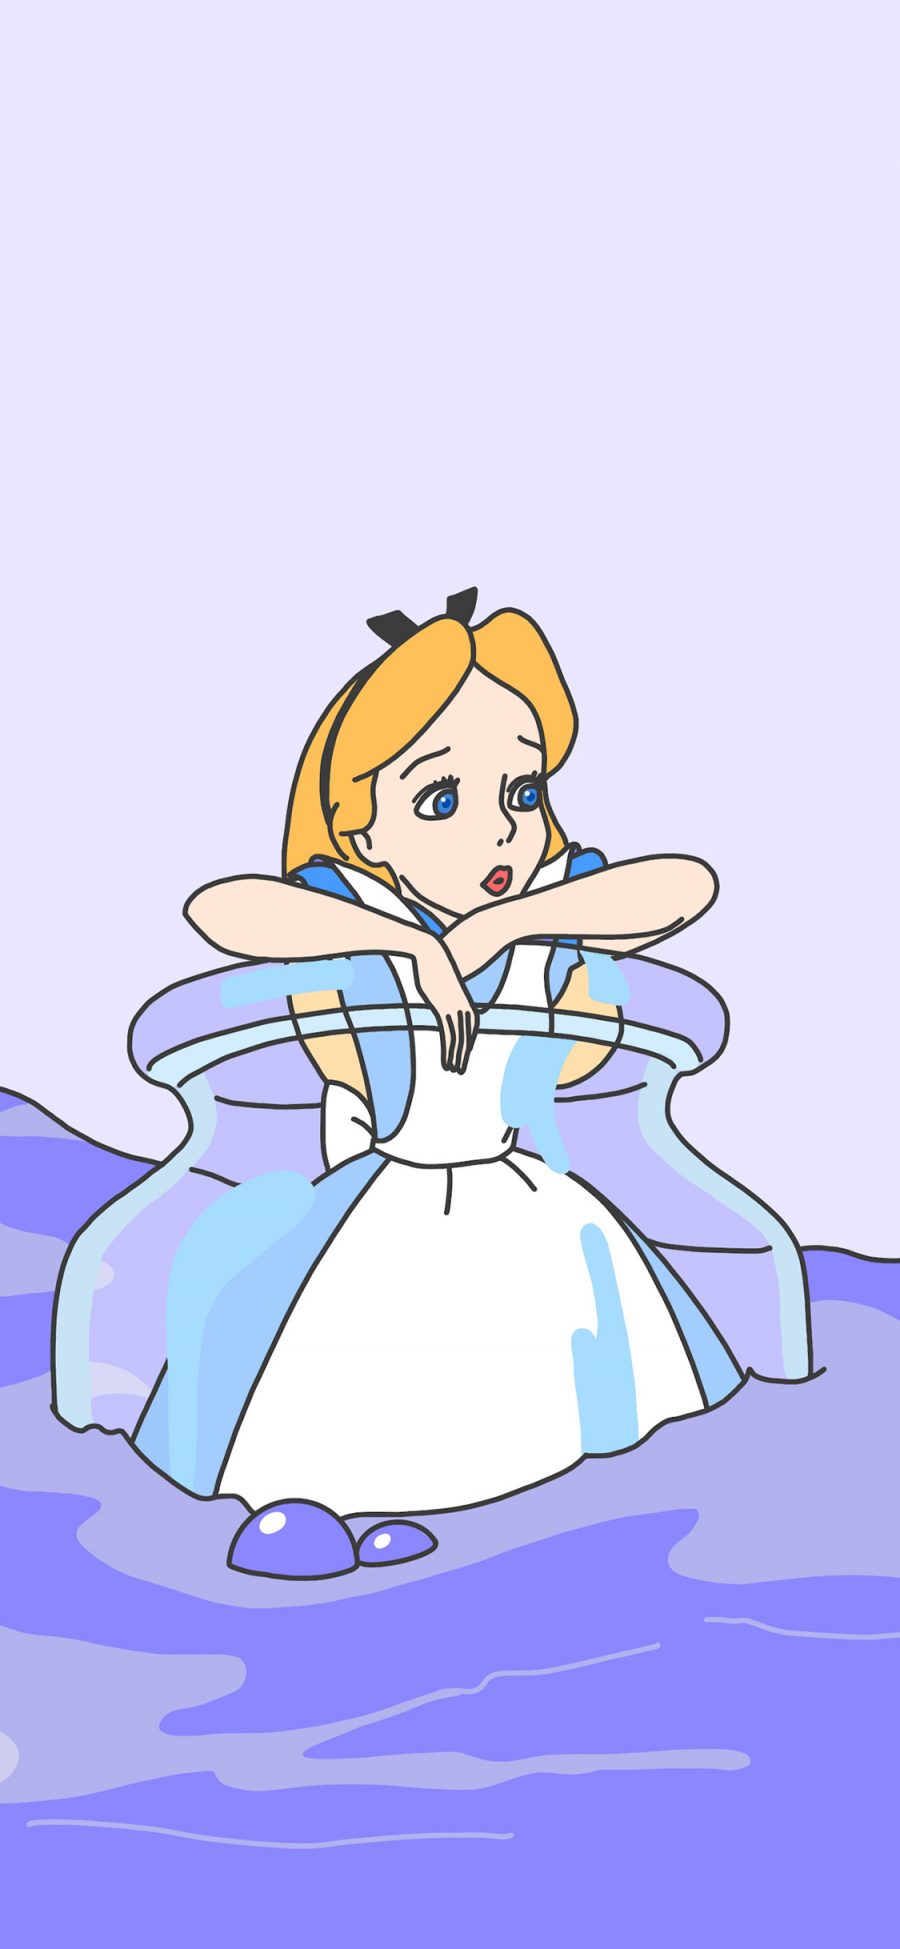 [2436×1125]迪士尼 童话 公主 爱丽丝梦游仙境 苹果手机动漫壁纸图片